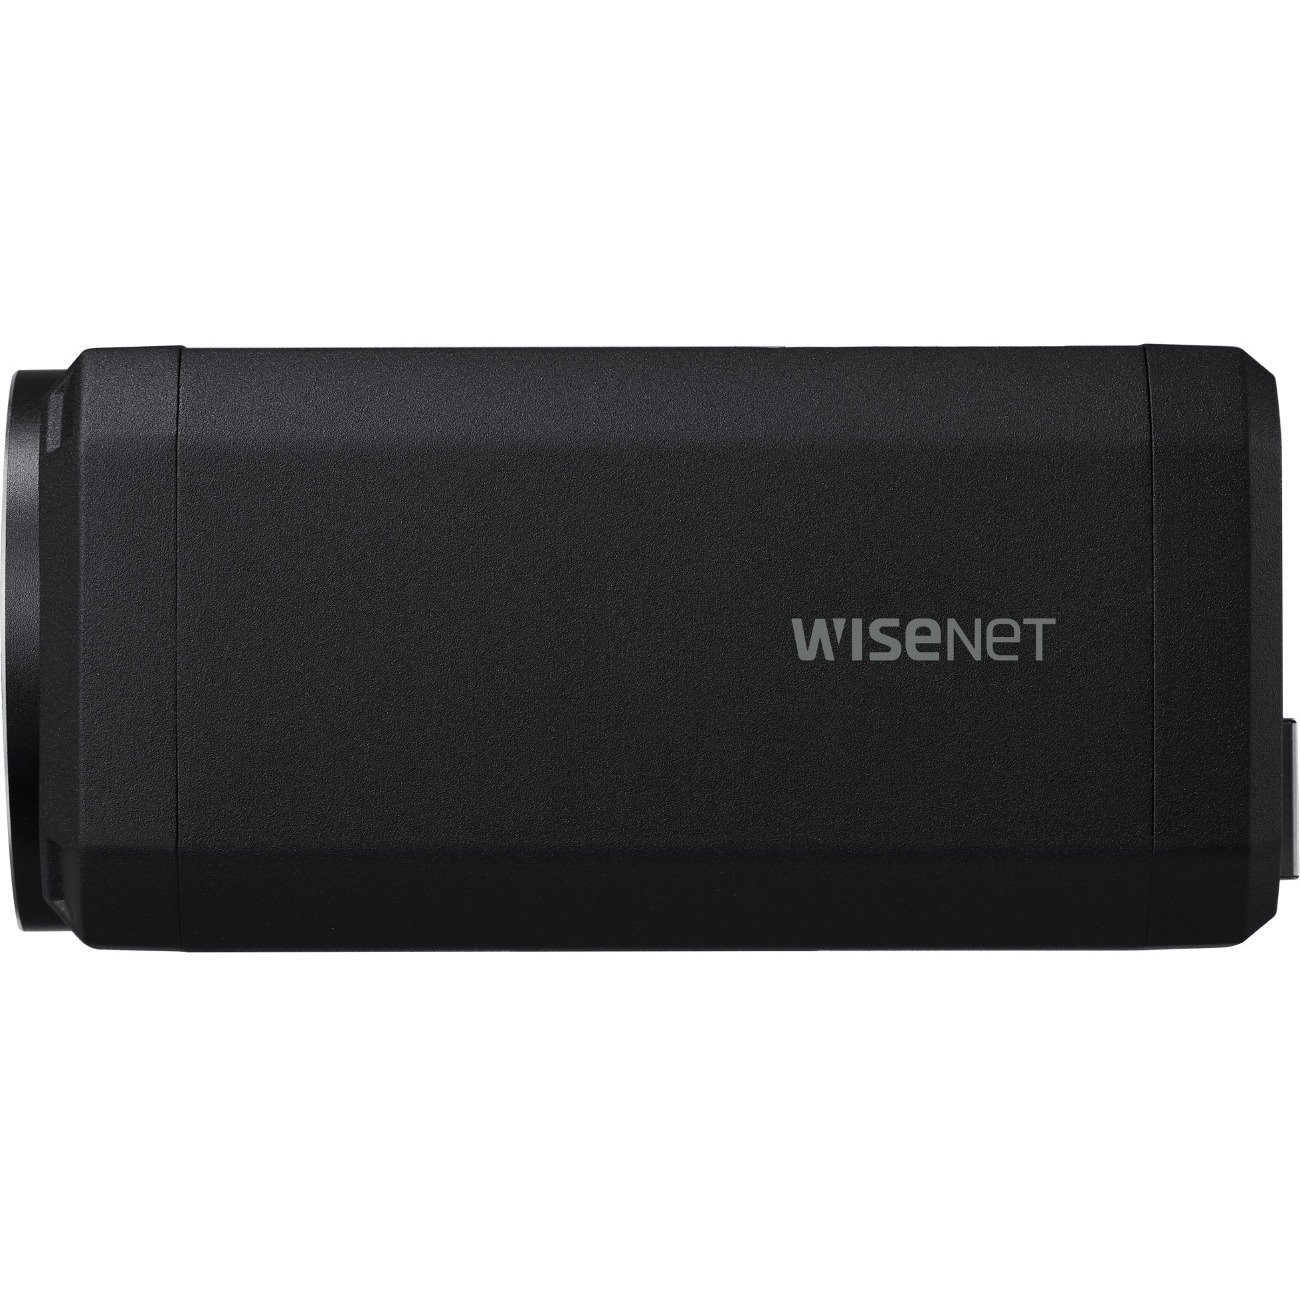 Wisenet XNZ-L6320A 2 Megapixel Full HD Network Camera - Color - Box - Black